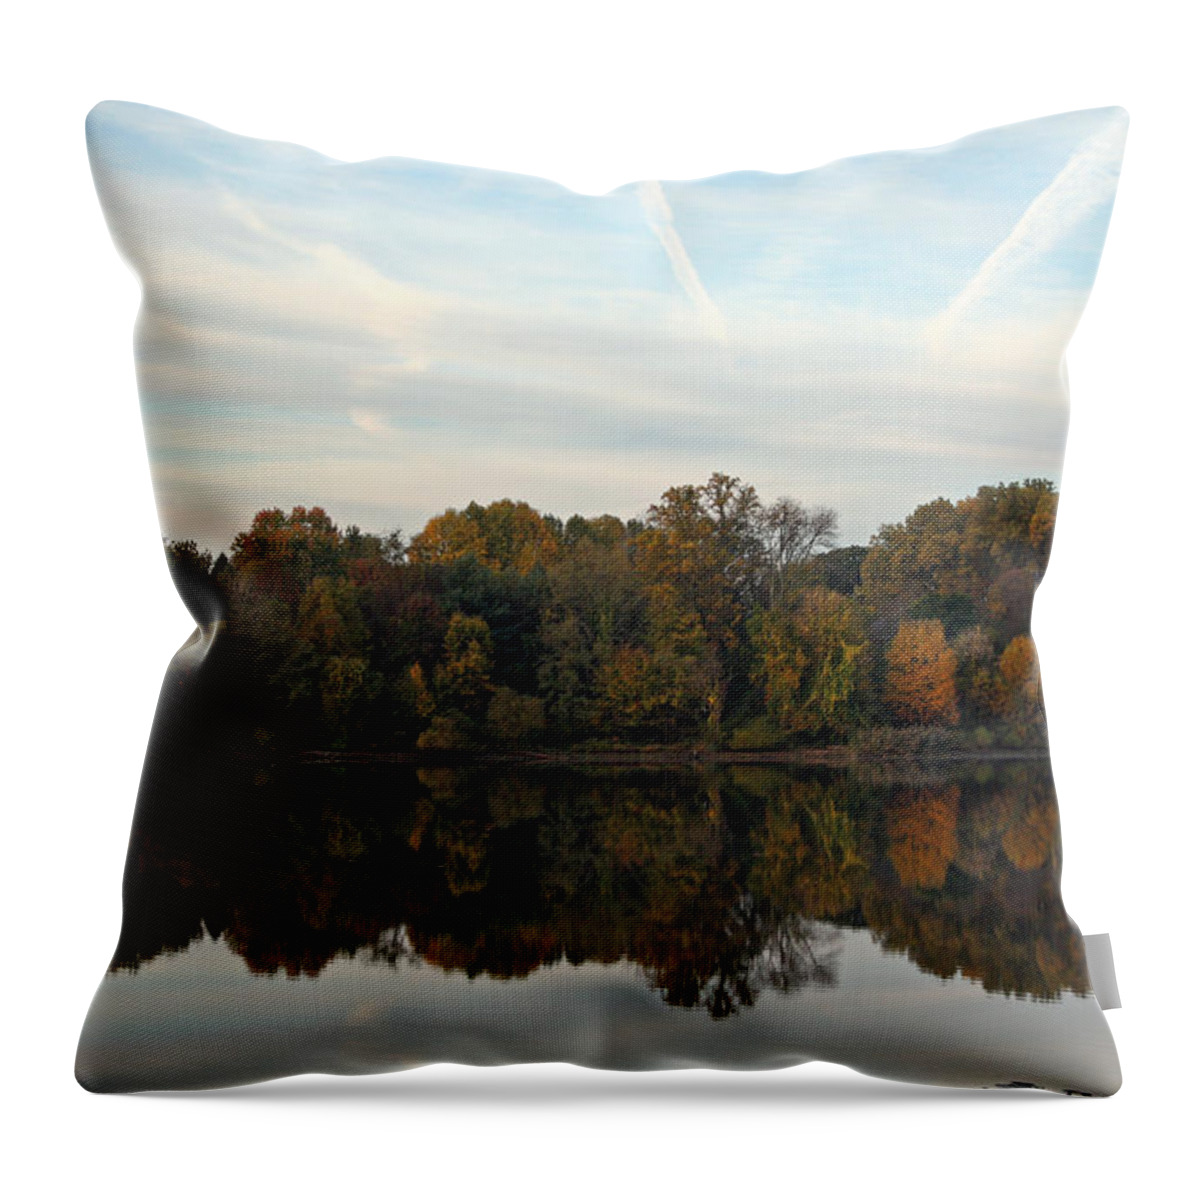 Centennial Throw Pillow featuring the photograph Centennial Lake Autumn - Thanksgiving Reflection by Ronald Reid